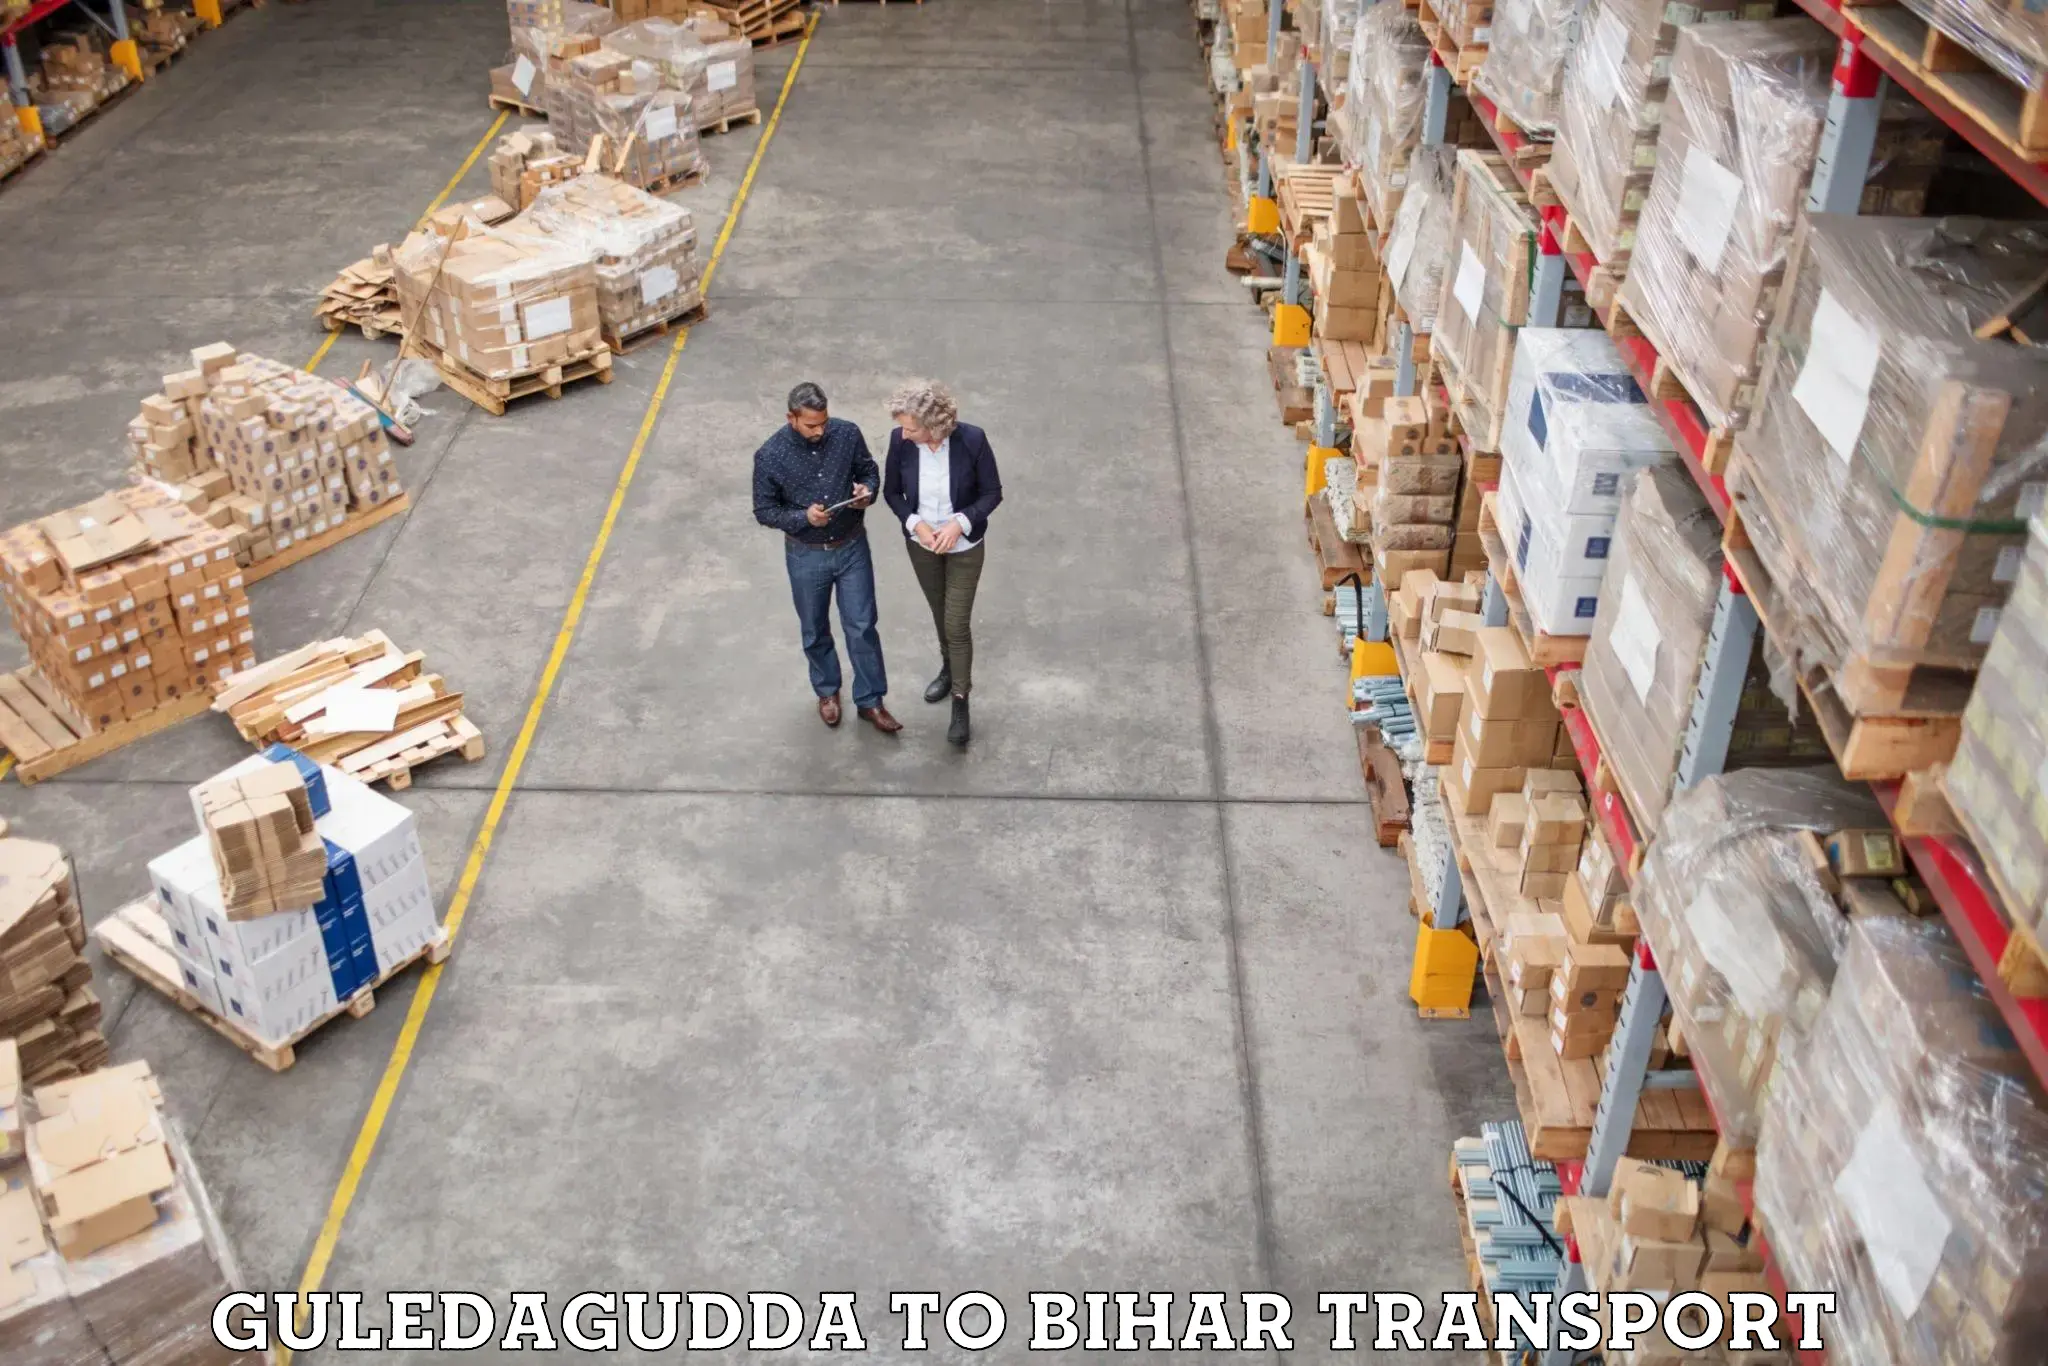 Vehicle parcel service Guledagudda to Dehri